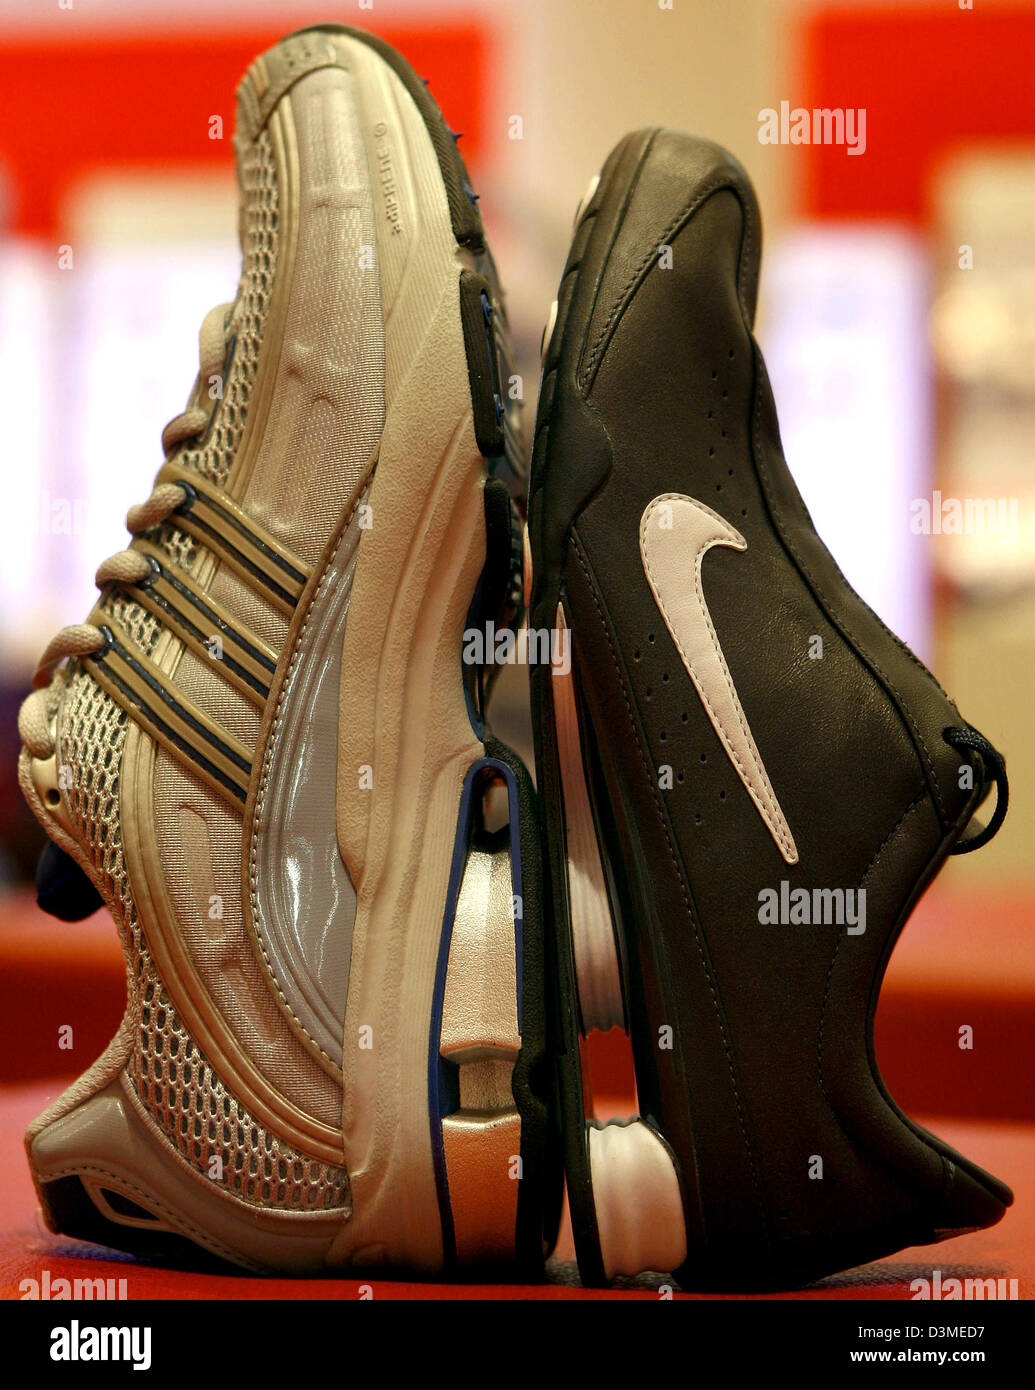 Un modèle avec "d'amorti HOX' par Nike (R) se dresse sur un modèle avec le  'a3' système de calage par adidas à Nuremberg, Allemagne, vendredi 17  février 2006. Nike a fait valoir